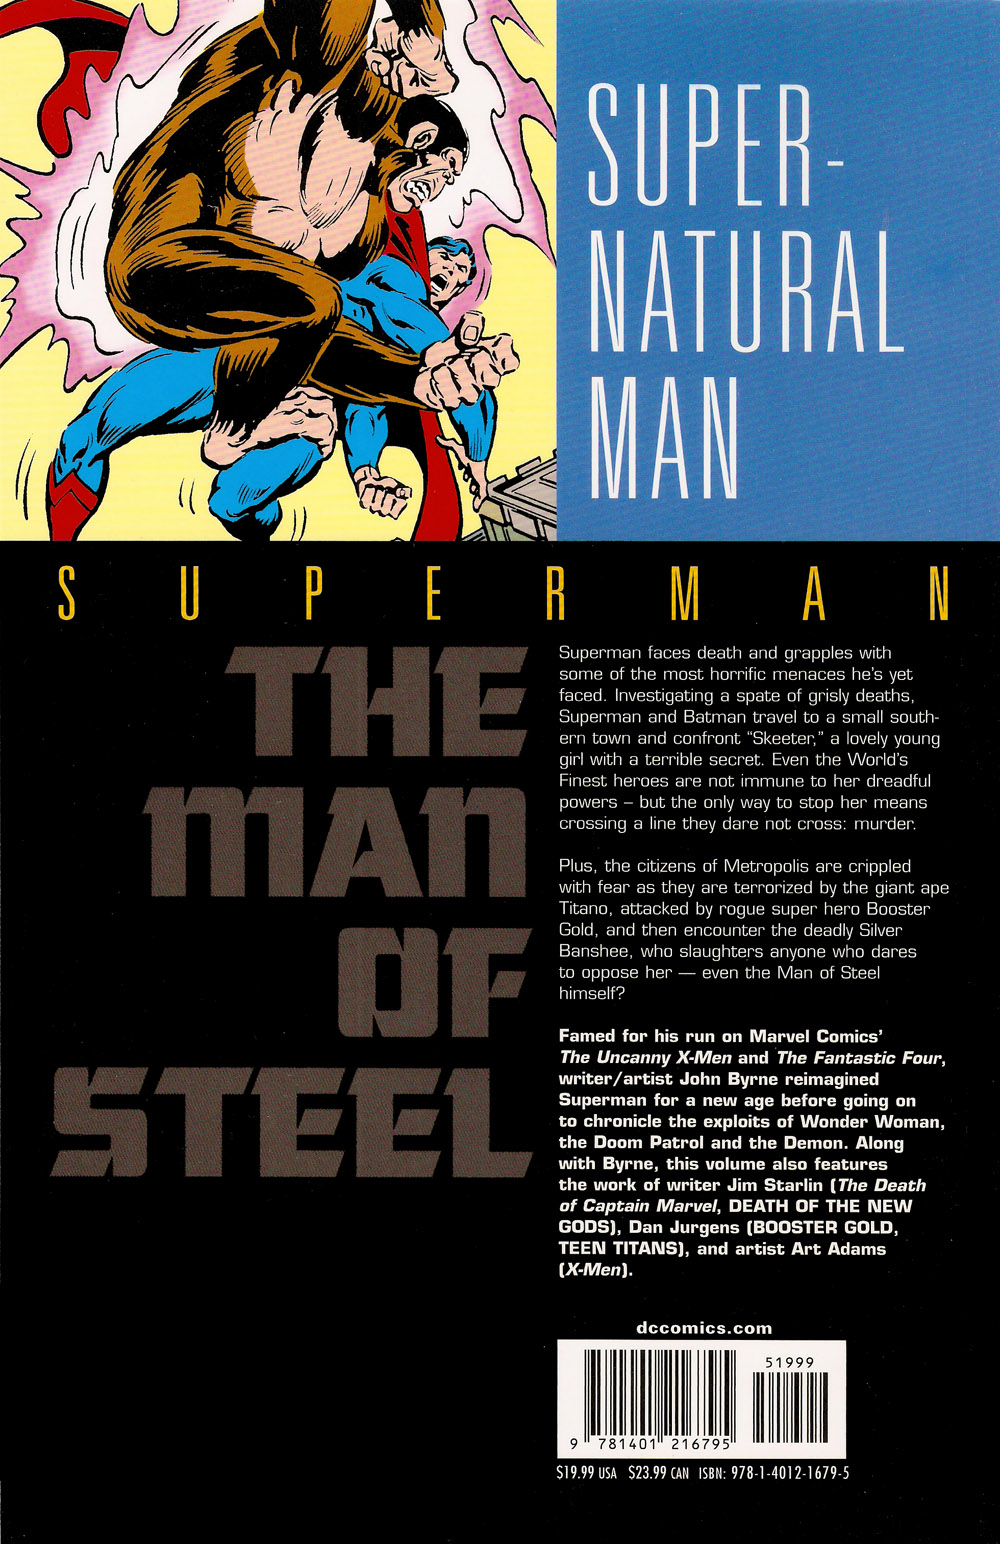 Man of Steel Vol. 6B